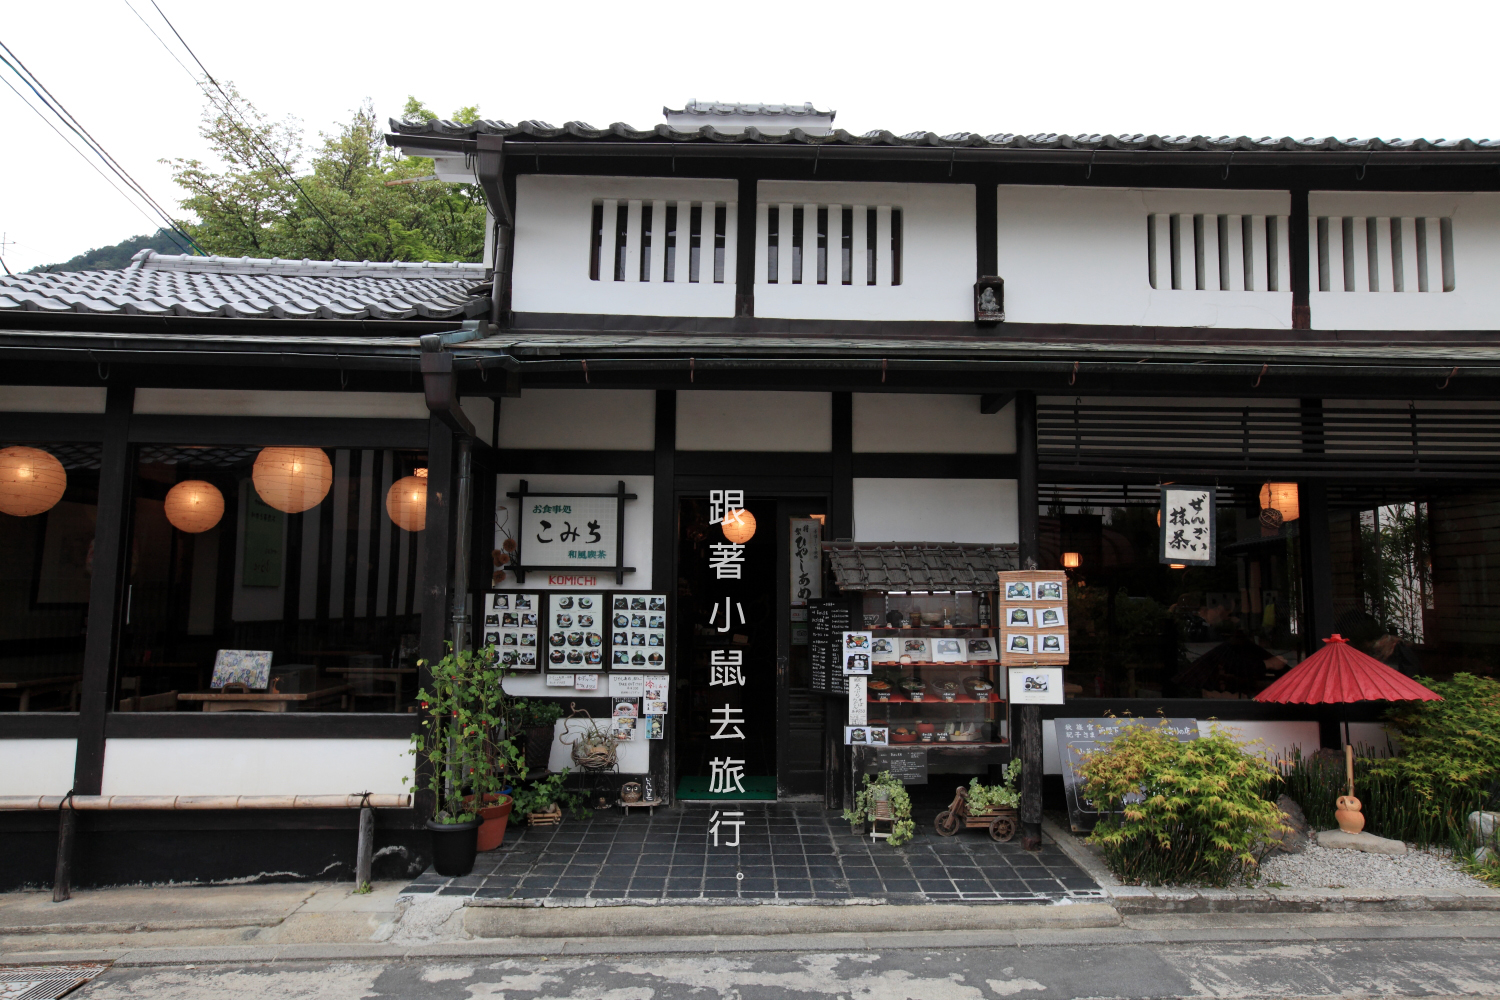 京都 嵐山喫茶店こみち 午間冷蕎麥麵和風定食 跟著小鼠去旅行